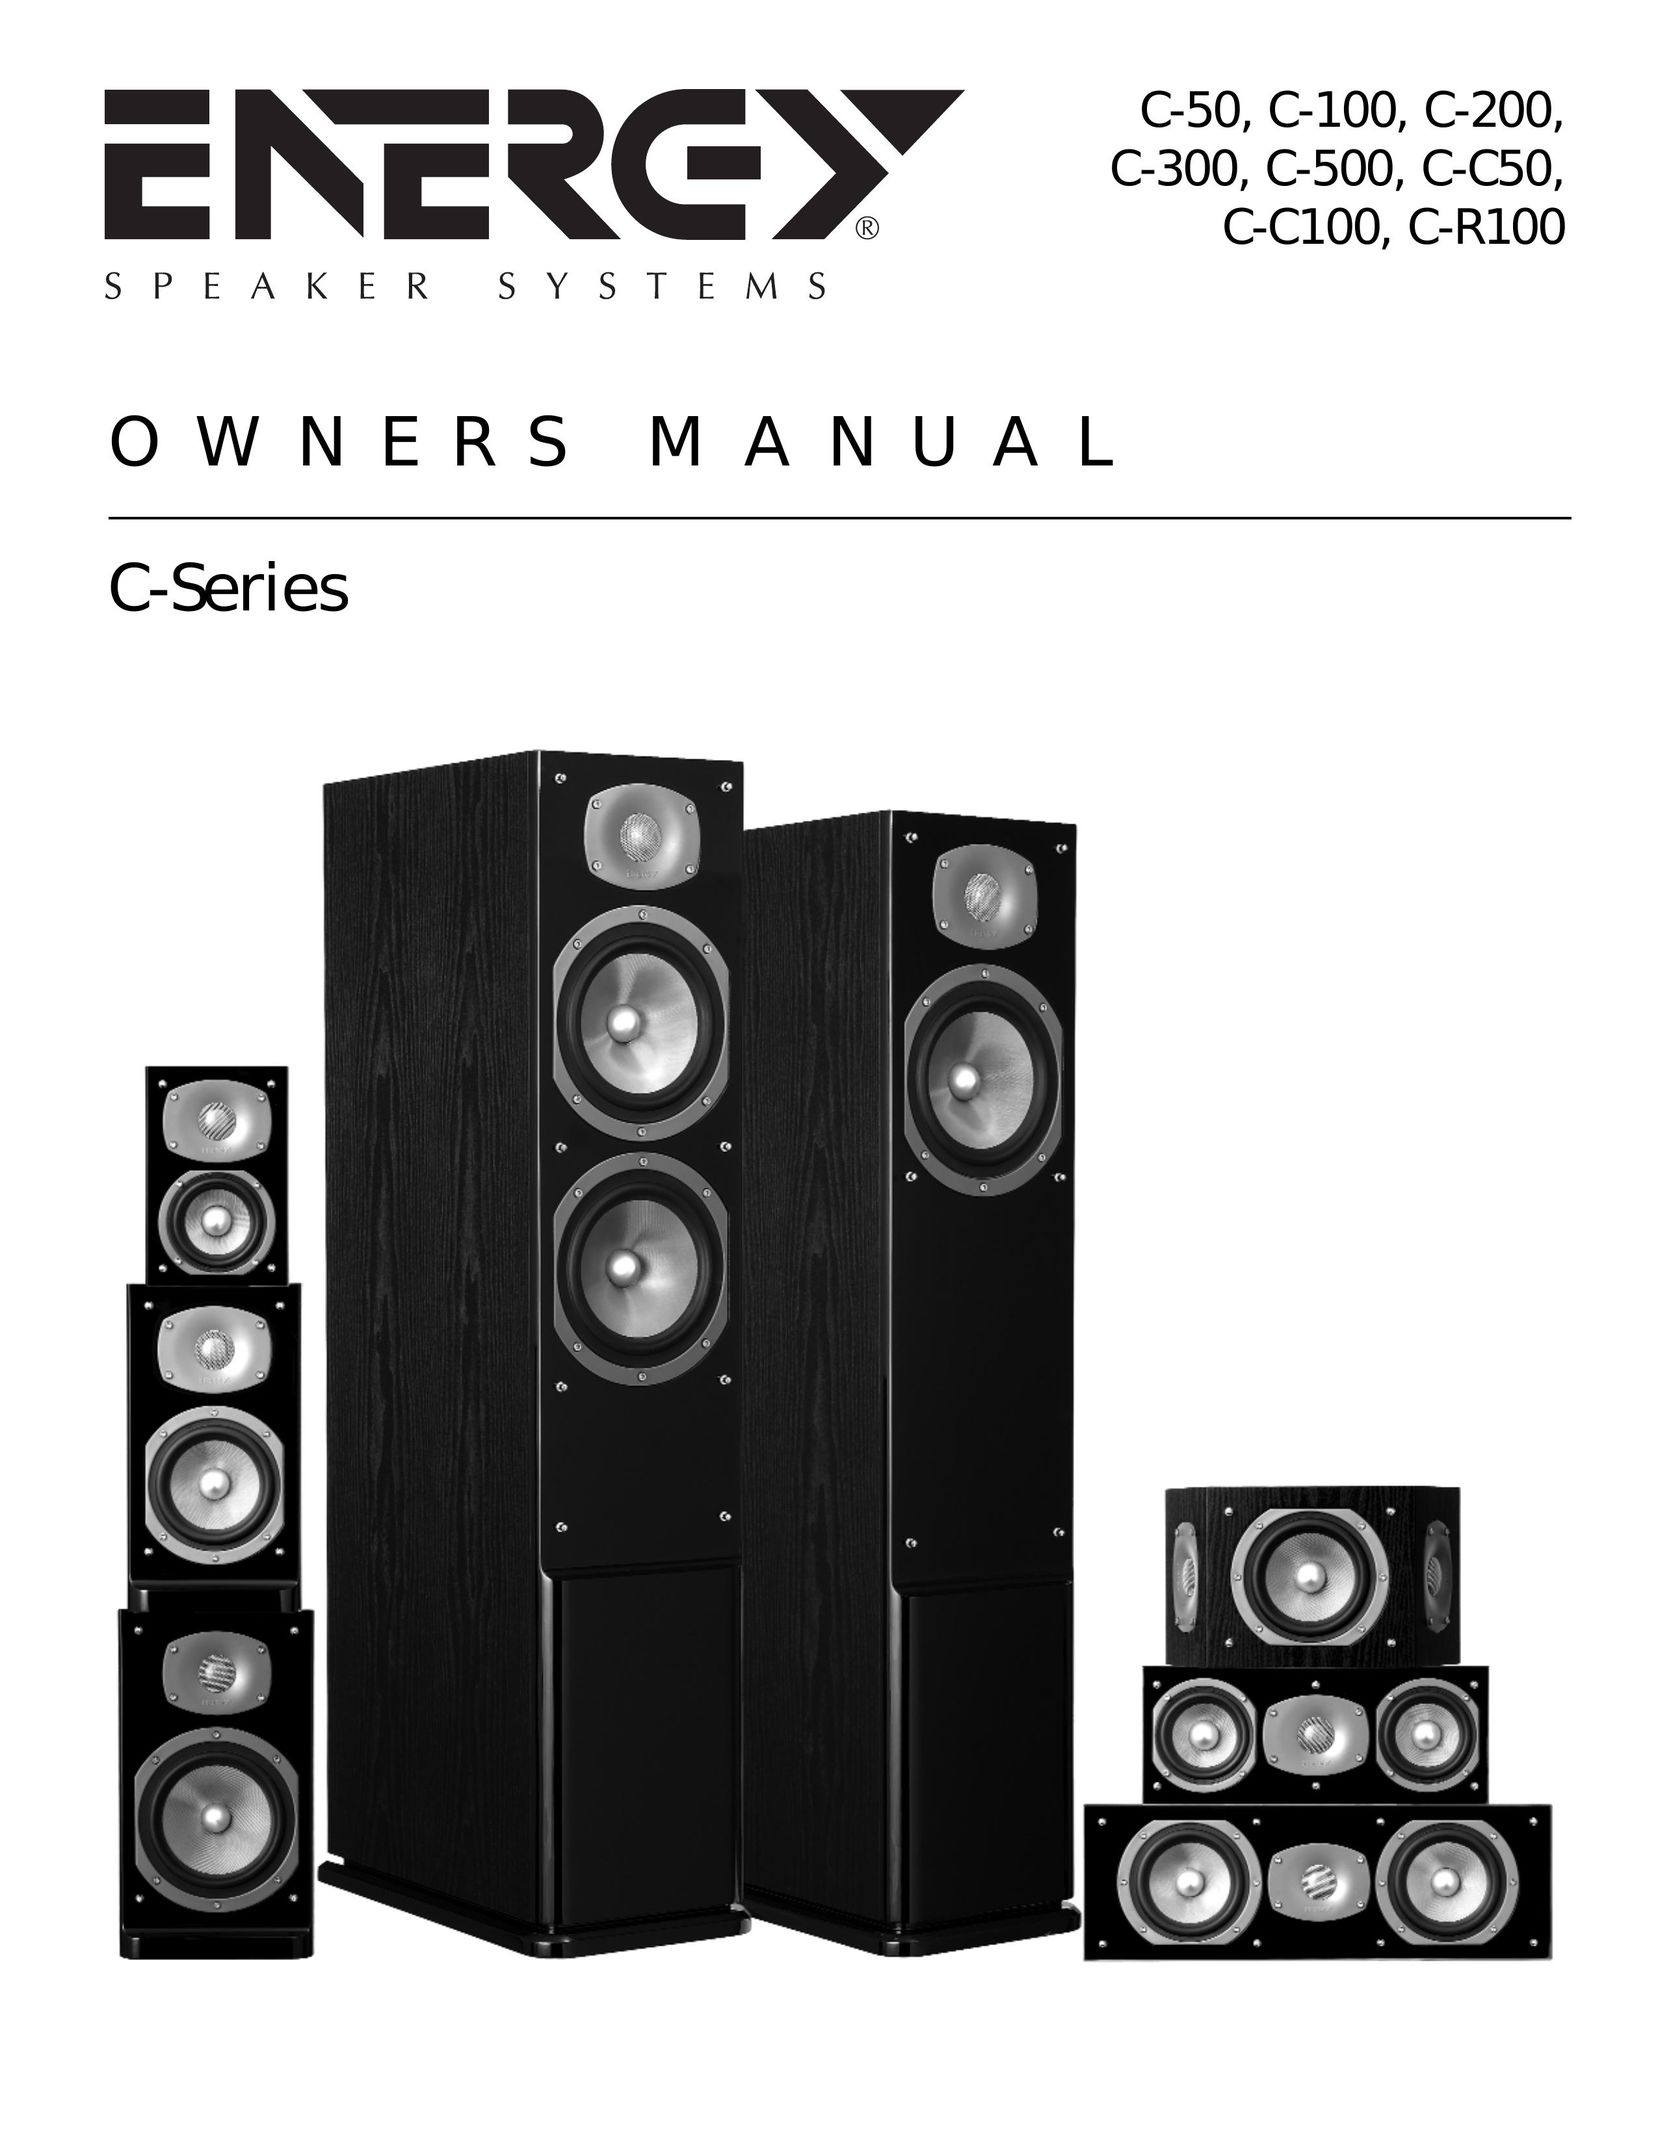 Energy Speaker Systems C-100 Speaker User Manual